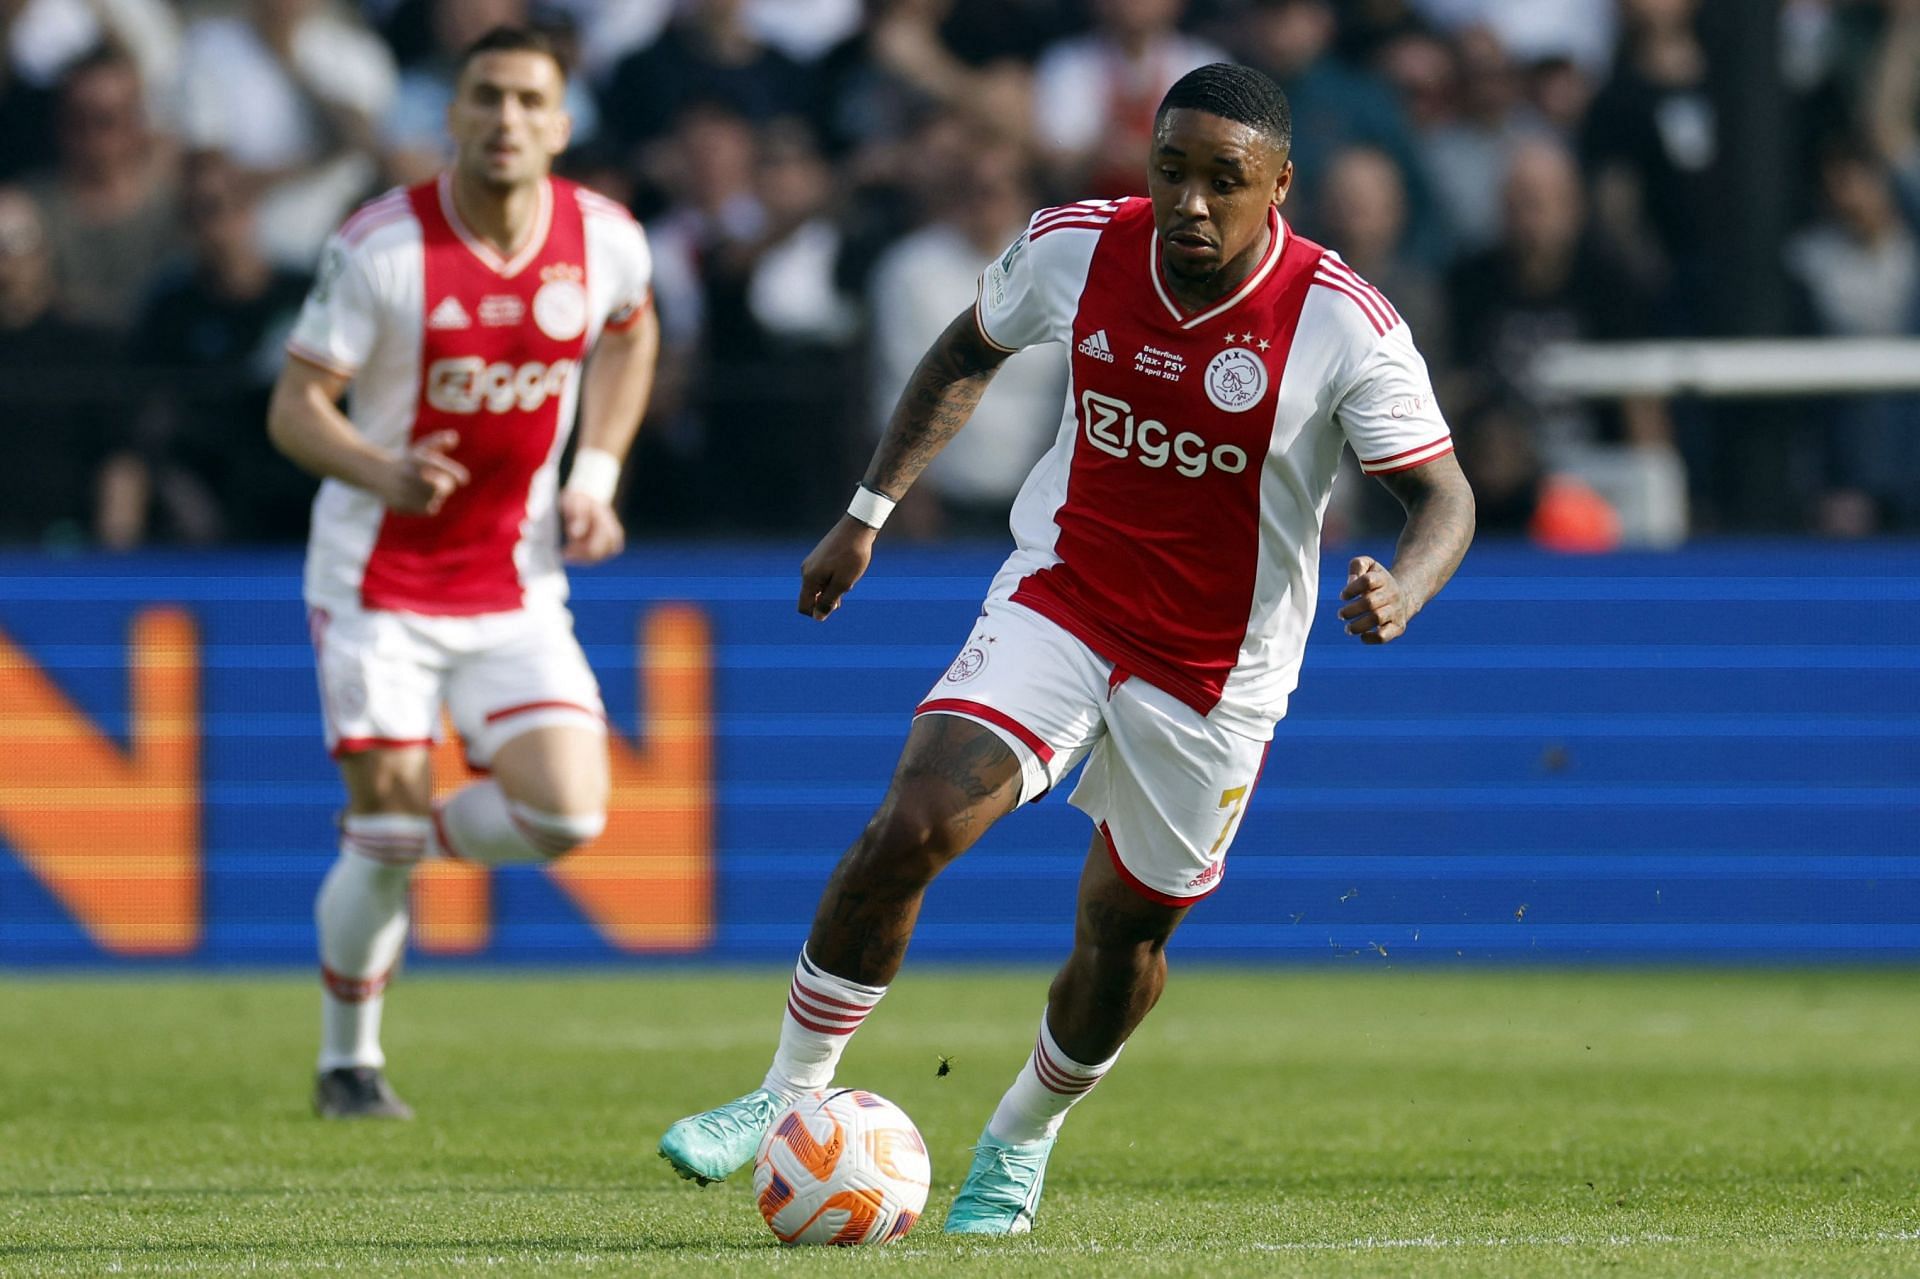 Ajax will face Groningen on Sunday 